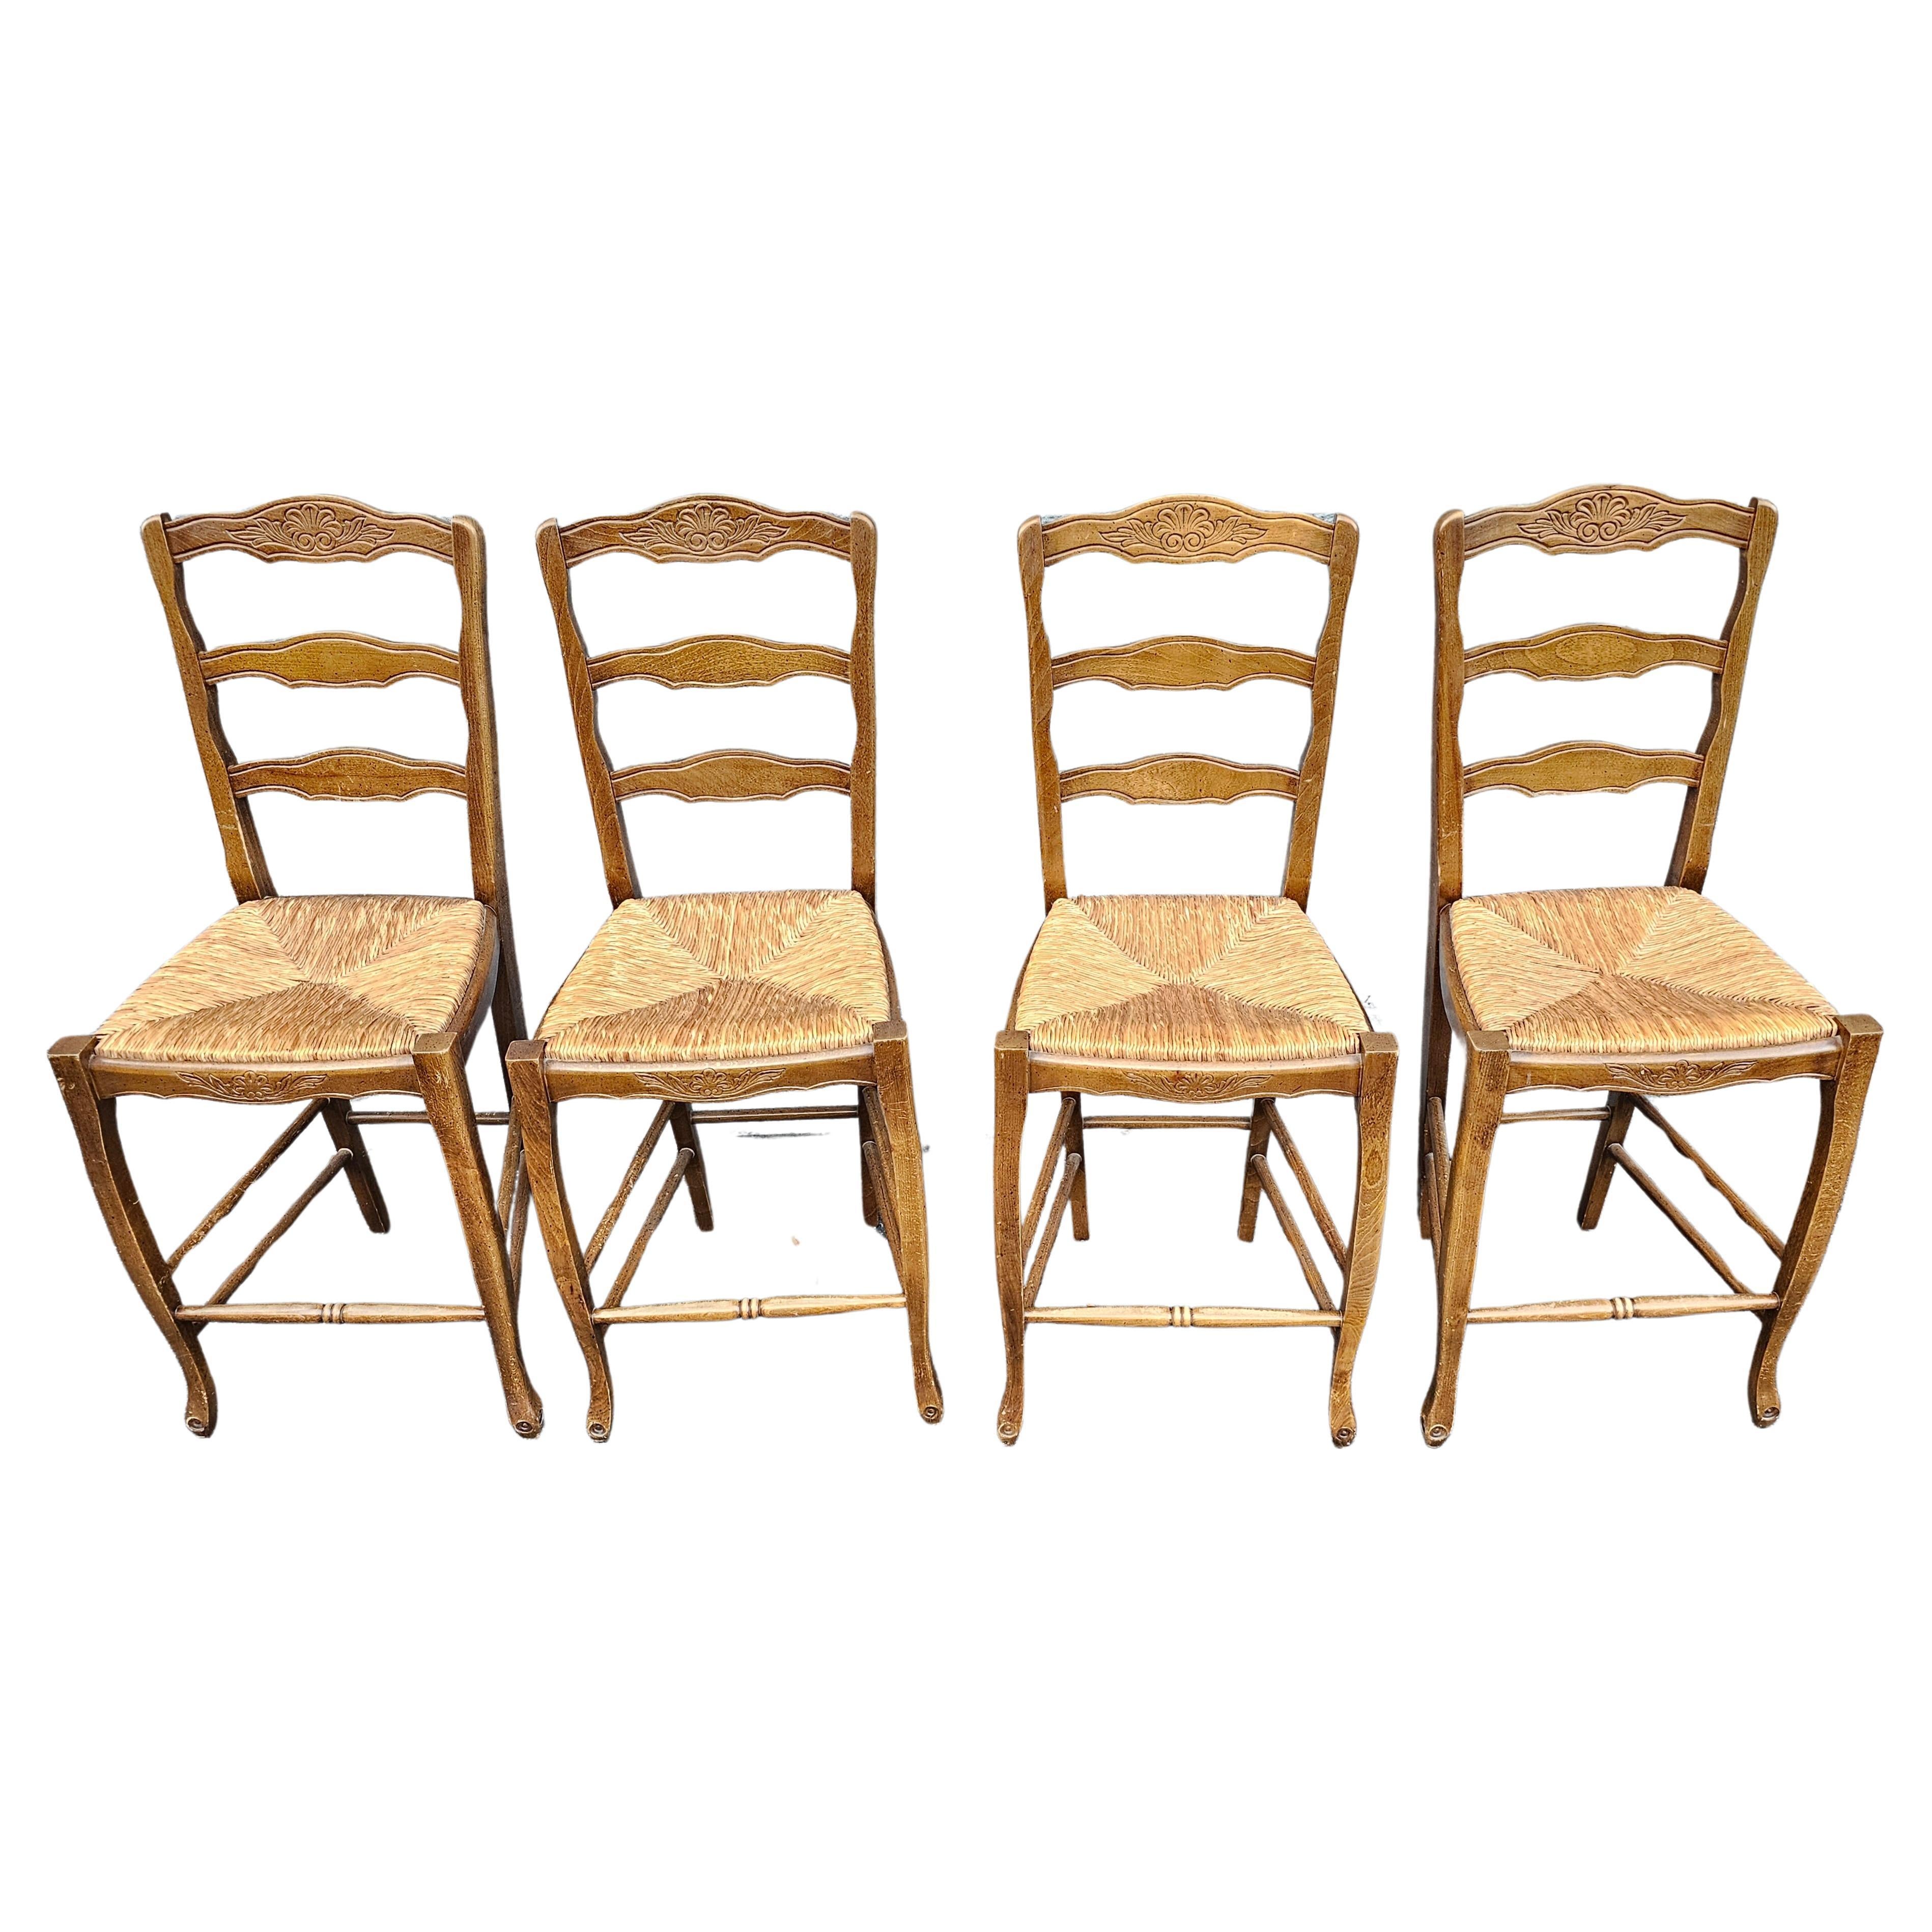 Paire de chaises de comptoir du milieu du siècle fabriquées en Italie, sculptées dans la nature et à assise en jonc. Deux paires disponibles. Le prix indiqué est celui d'une paire.
Mesure 17,5